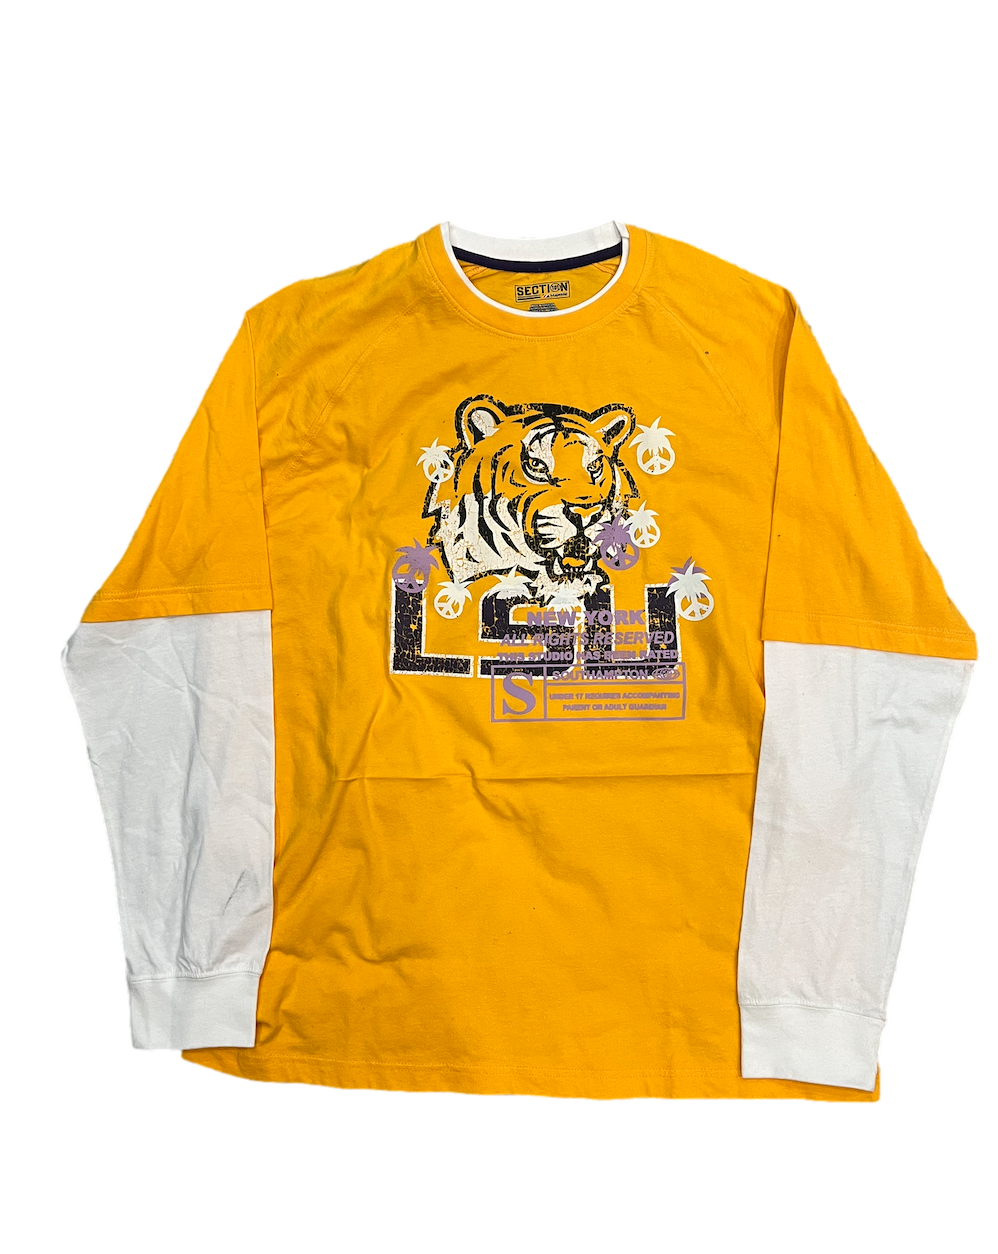 1/1 LSU Long Sleeve Shirt